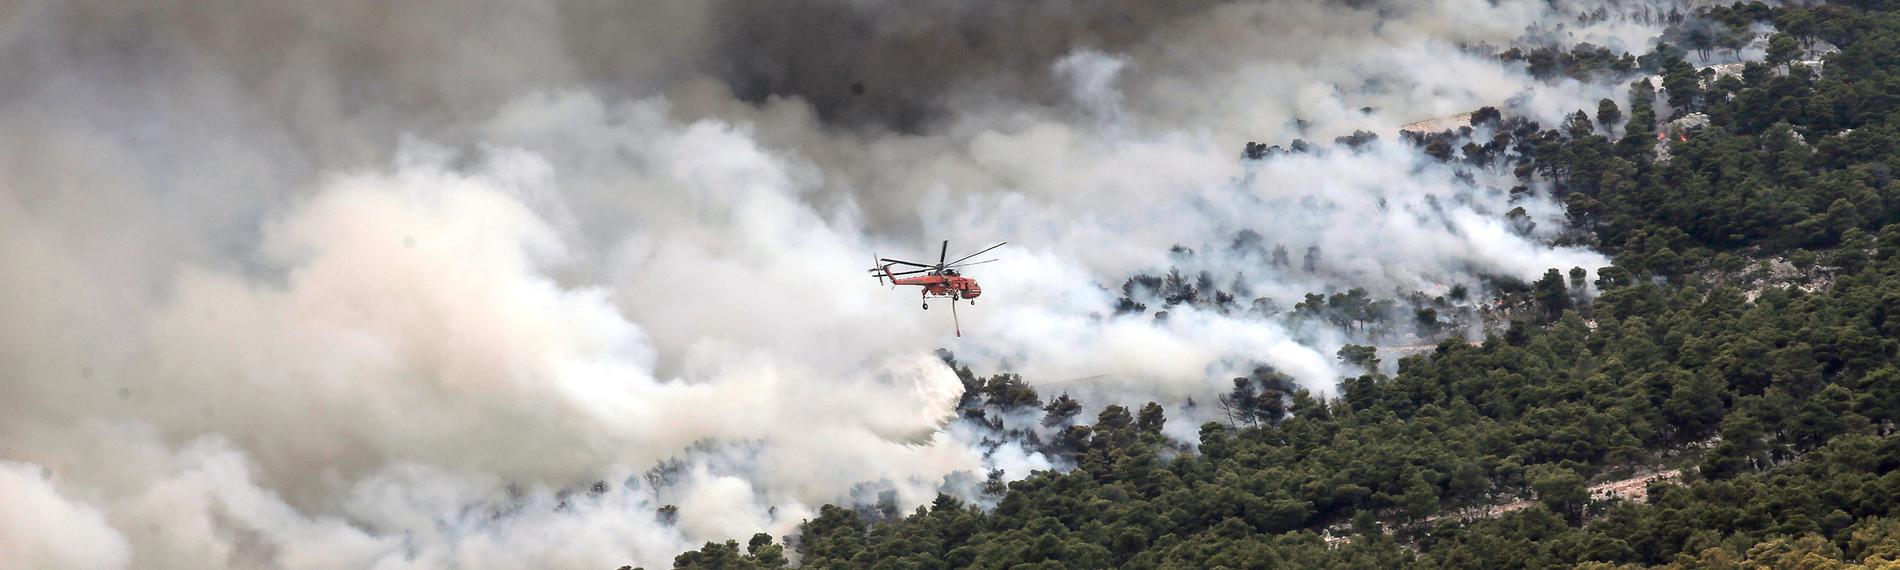 Waldbrand am Fuße des Parnitha-Gebirges nahe Athen